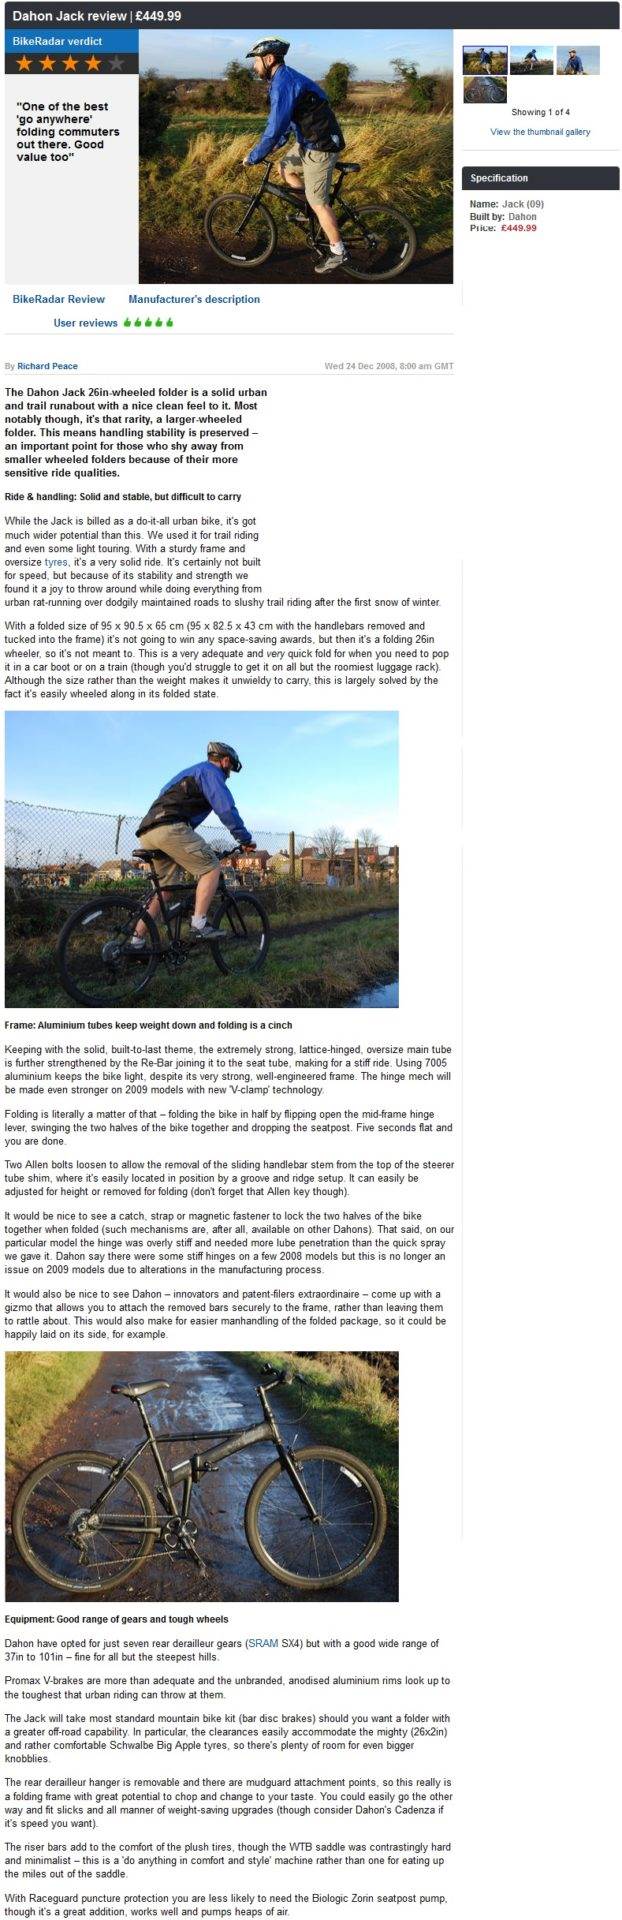 Dahon Jack Reviewed by Bike Radar